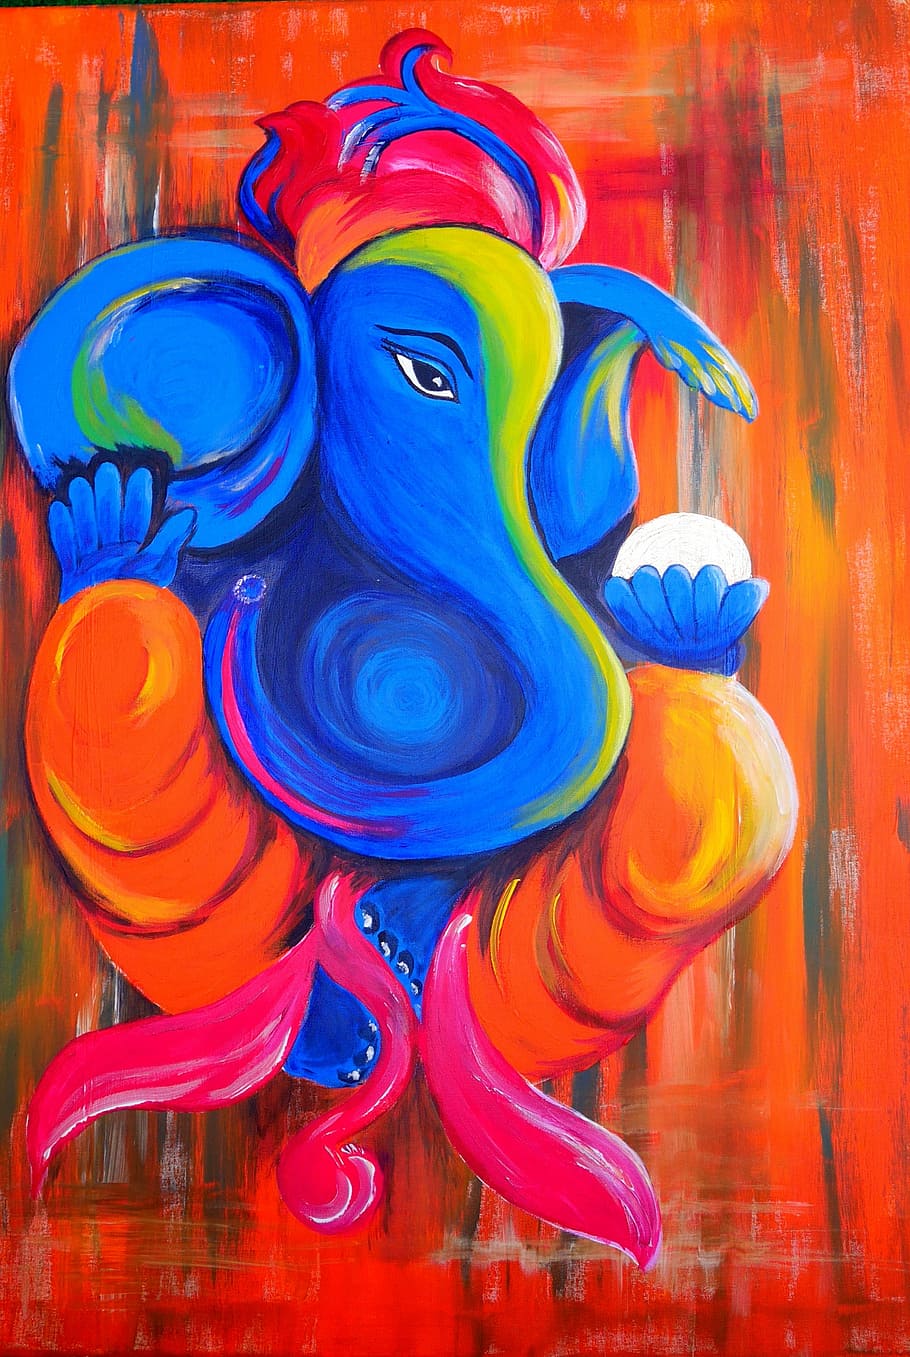 azul, amarelo, vermelho, laranja, pintura de elefante, elefante, ganesha, deus, divindade, índia